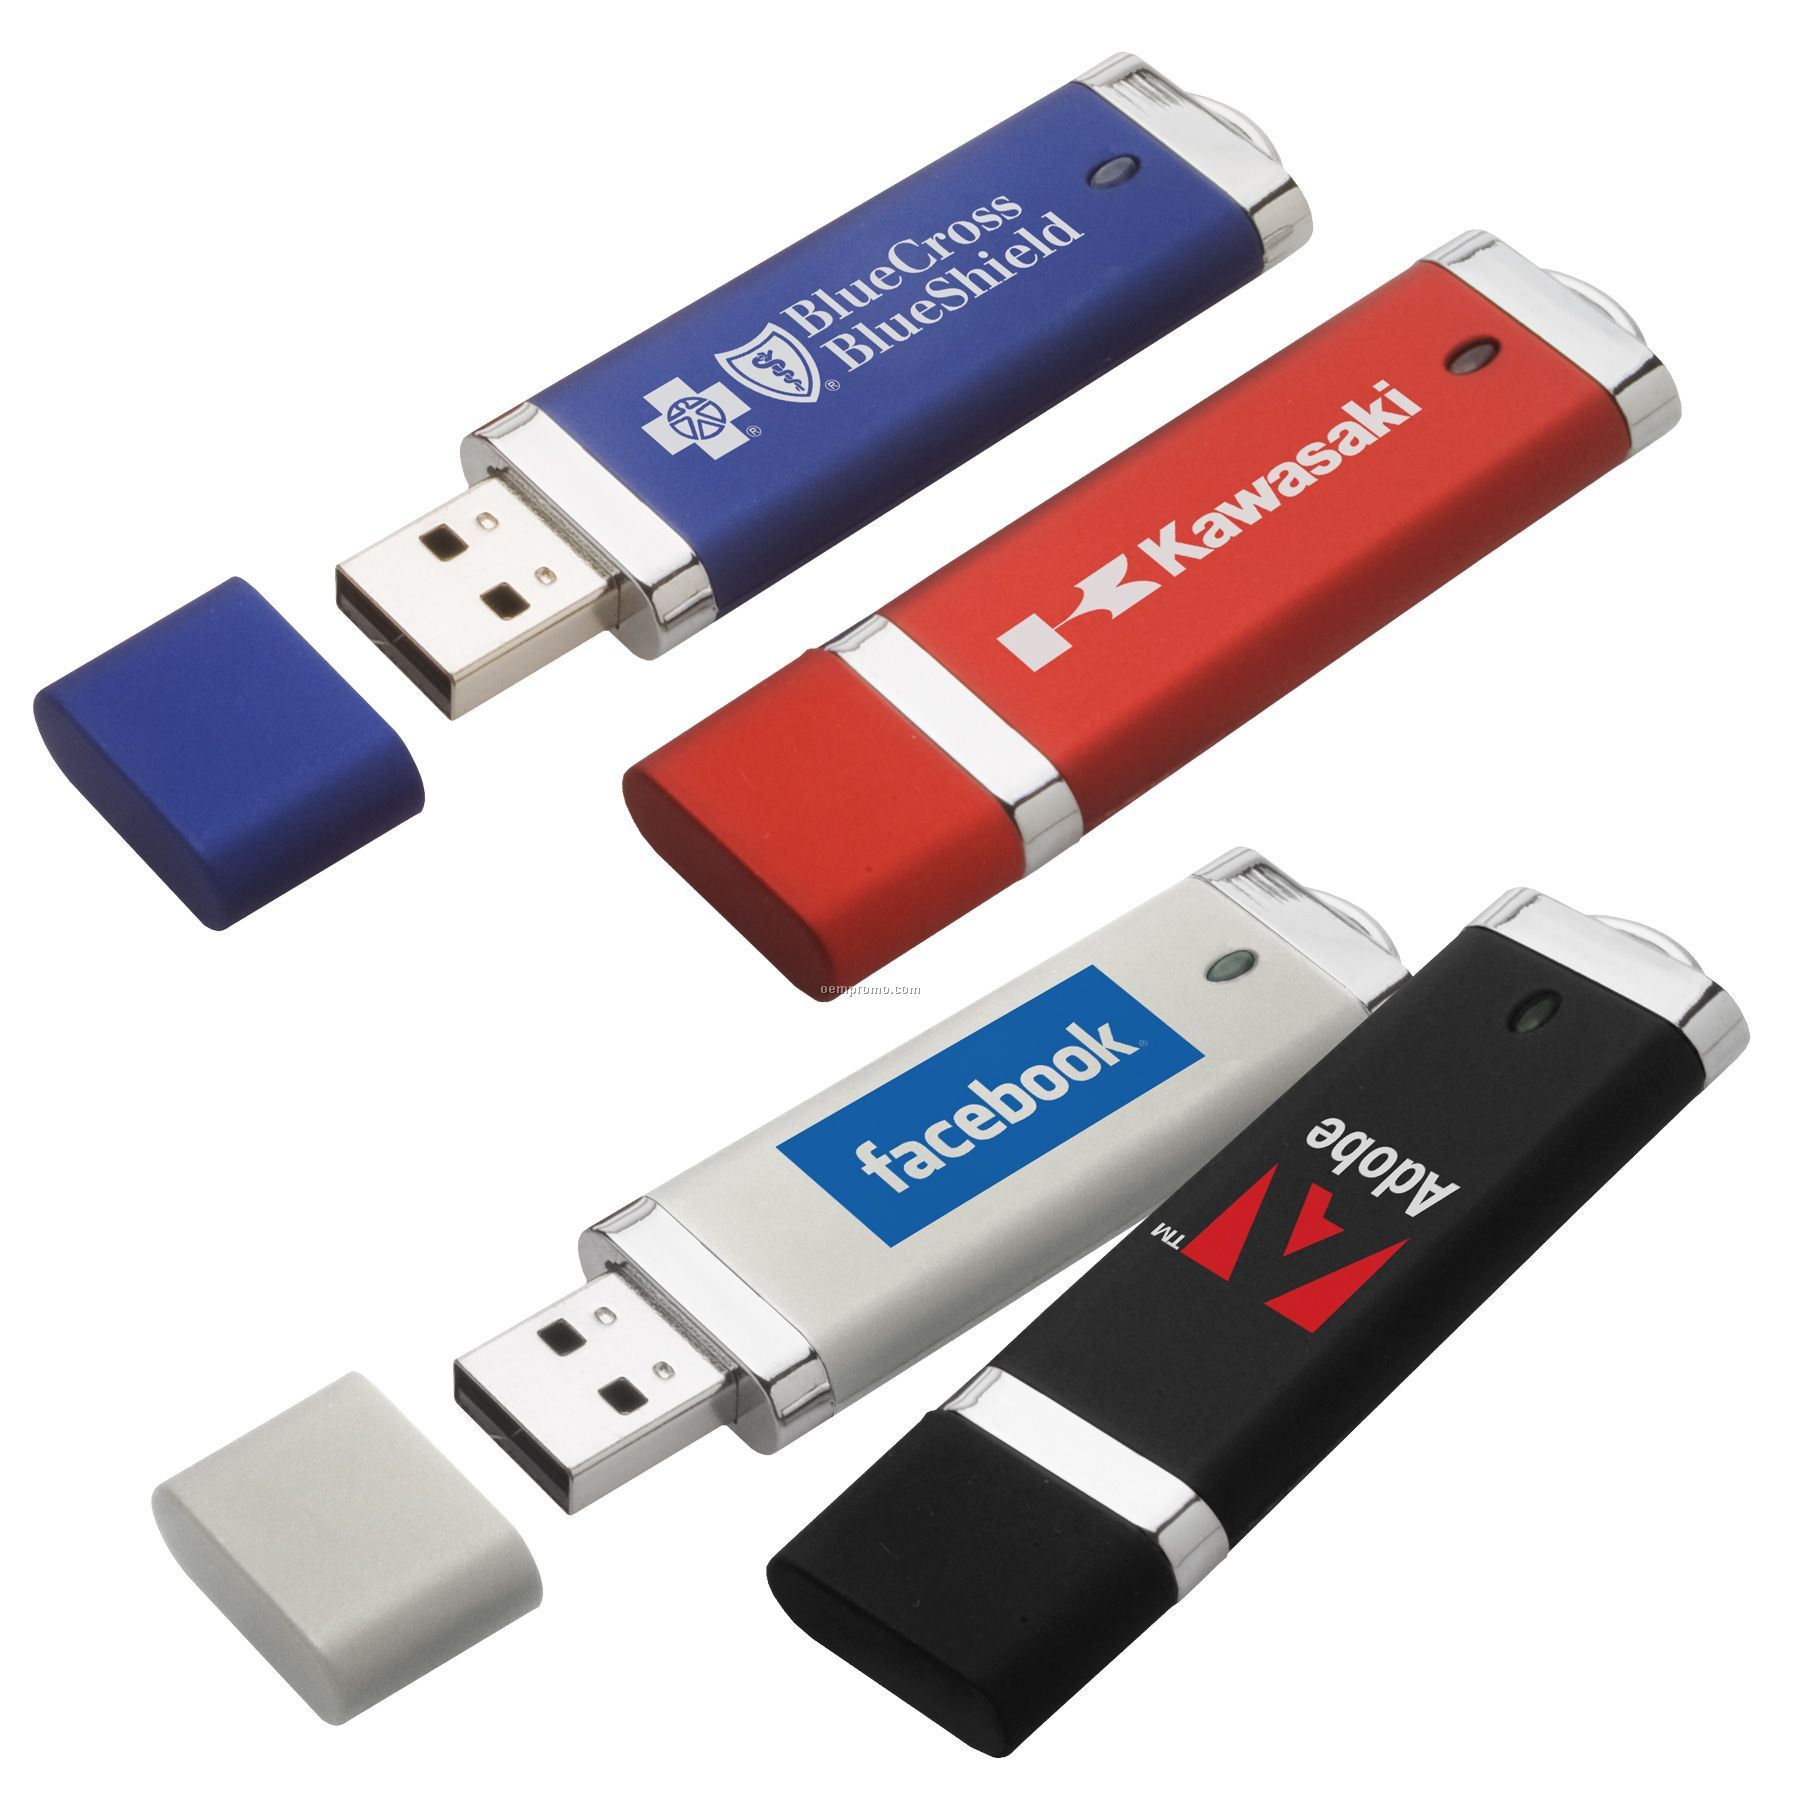 Anzi USB Flash Drive (512mb)